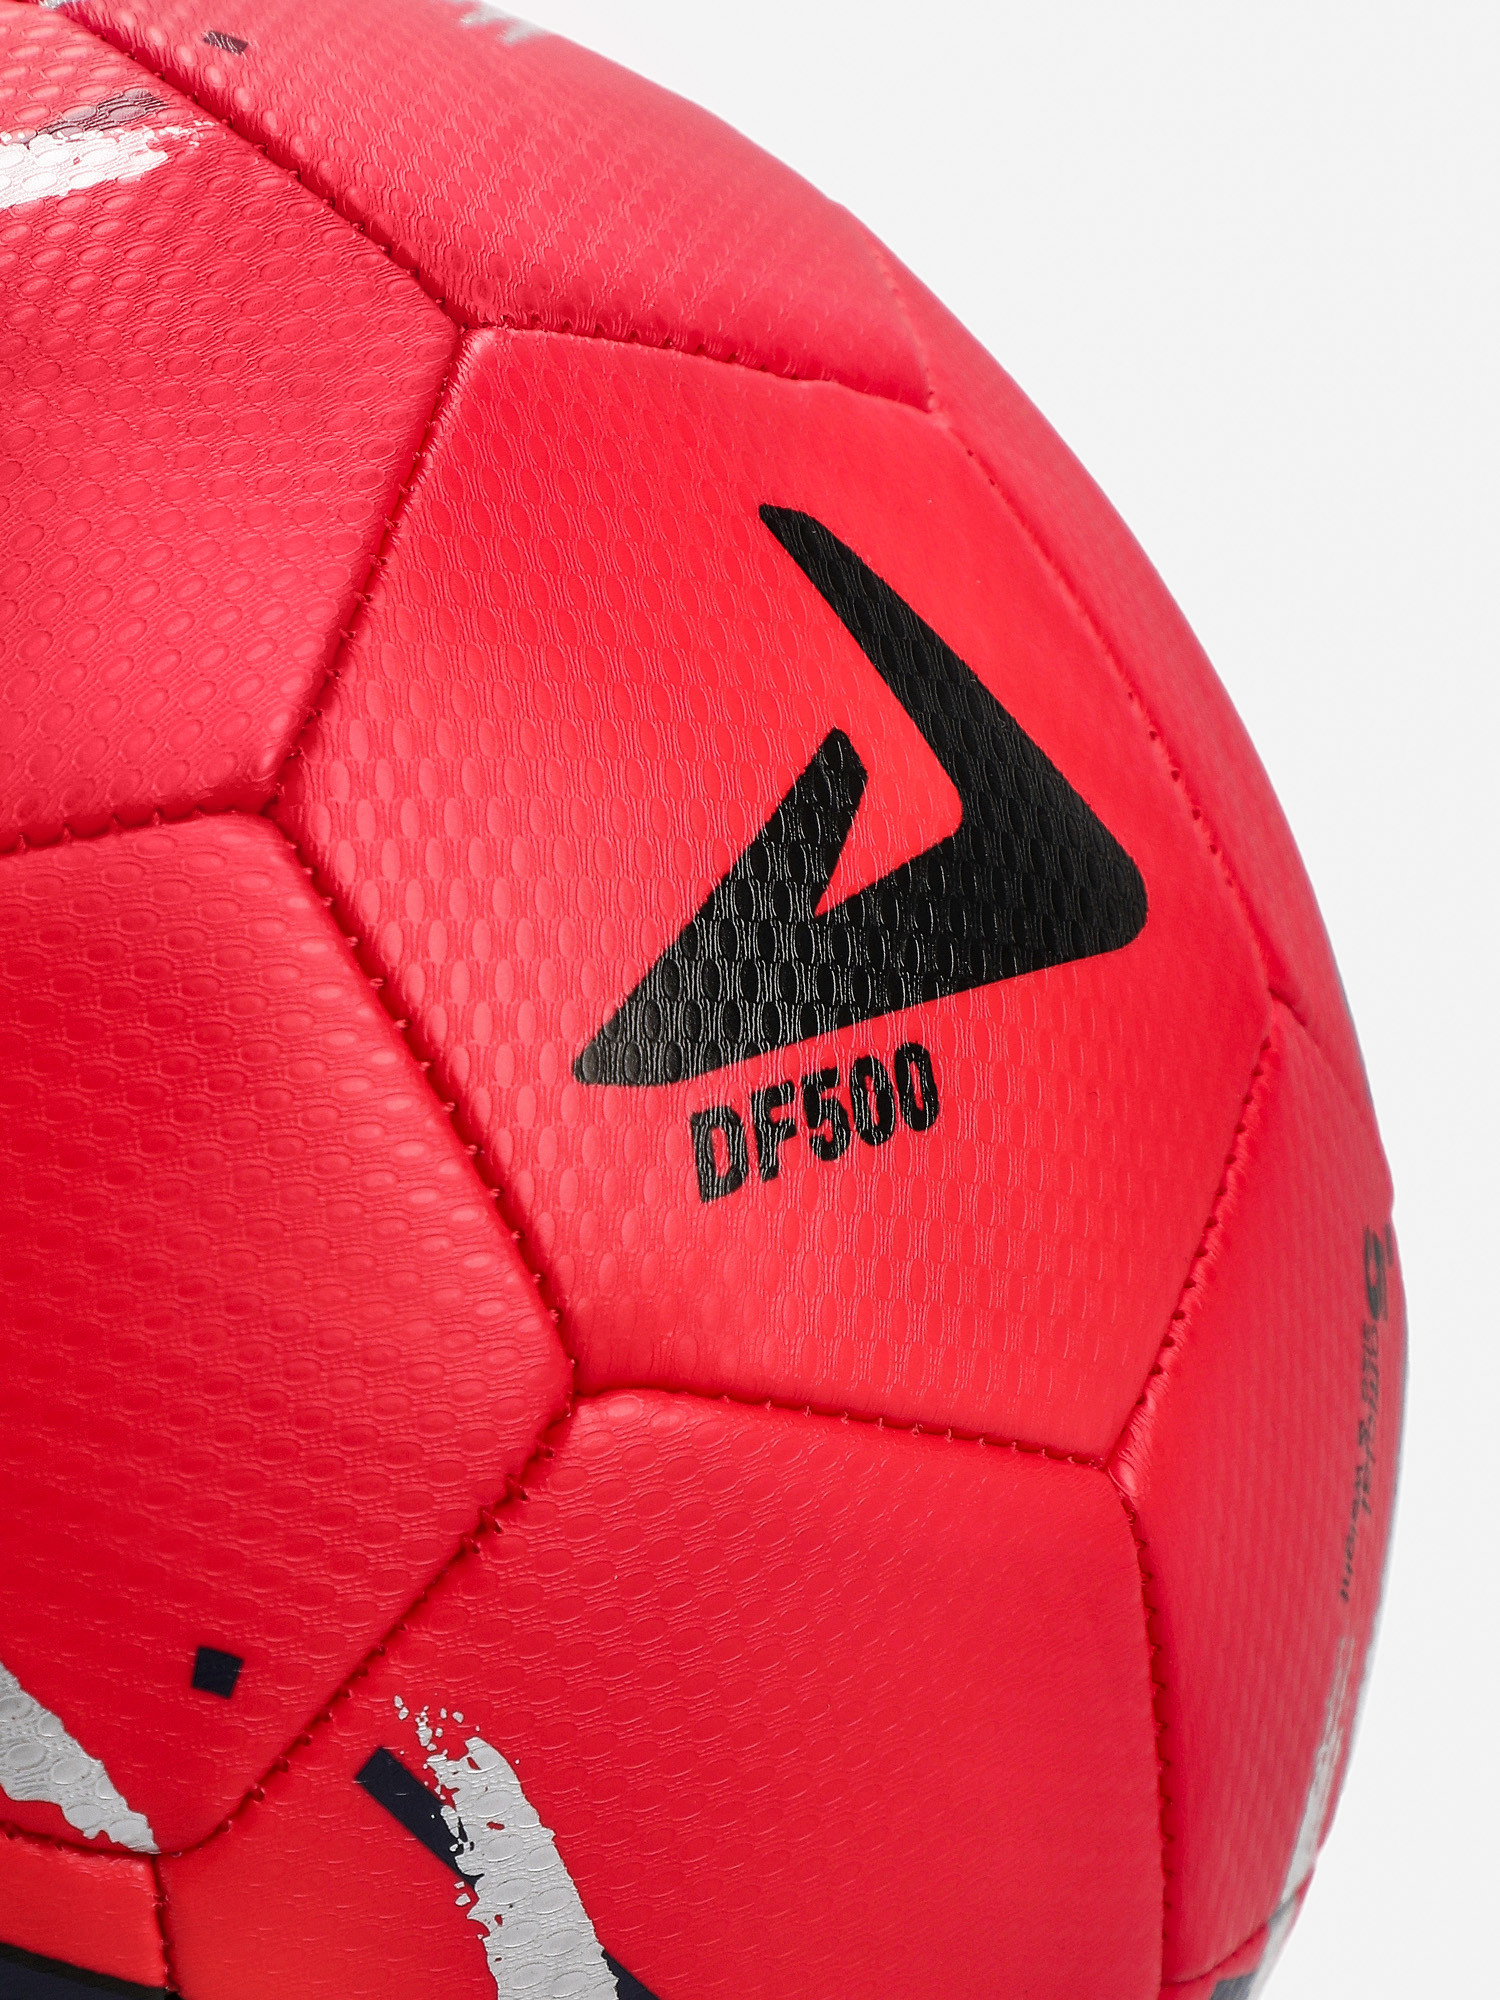 Мяч футбольный Demix DF500